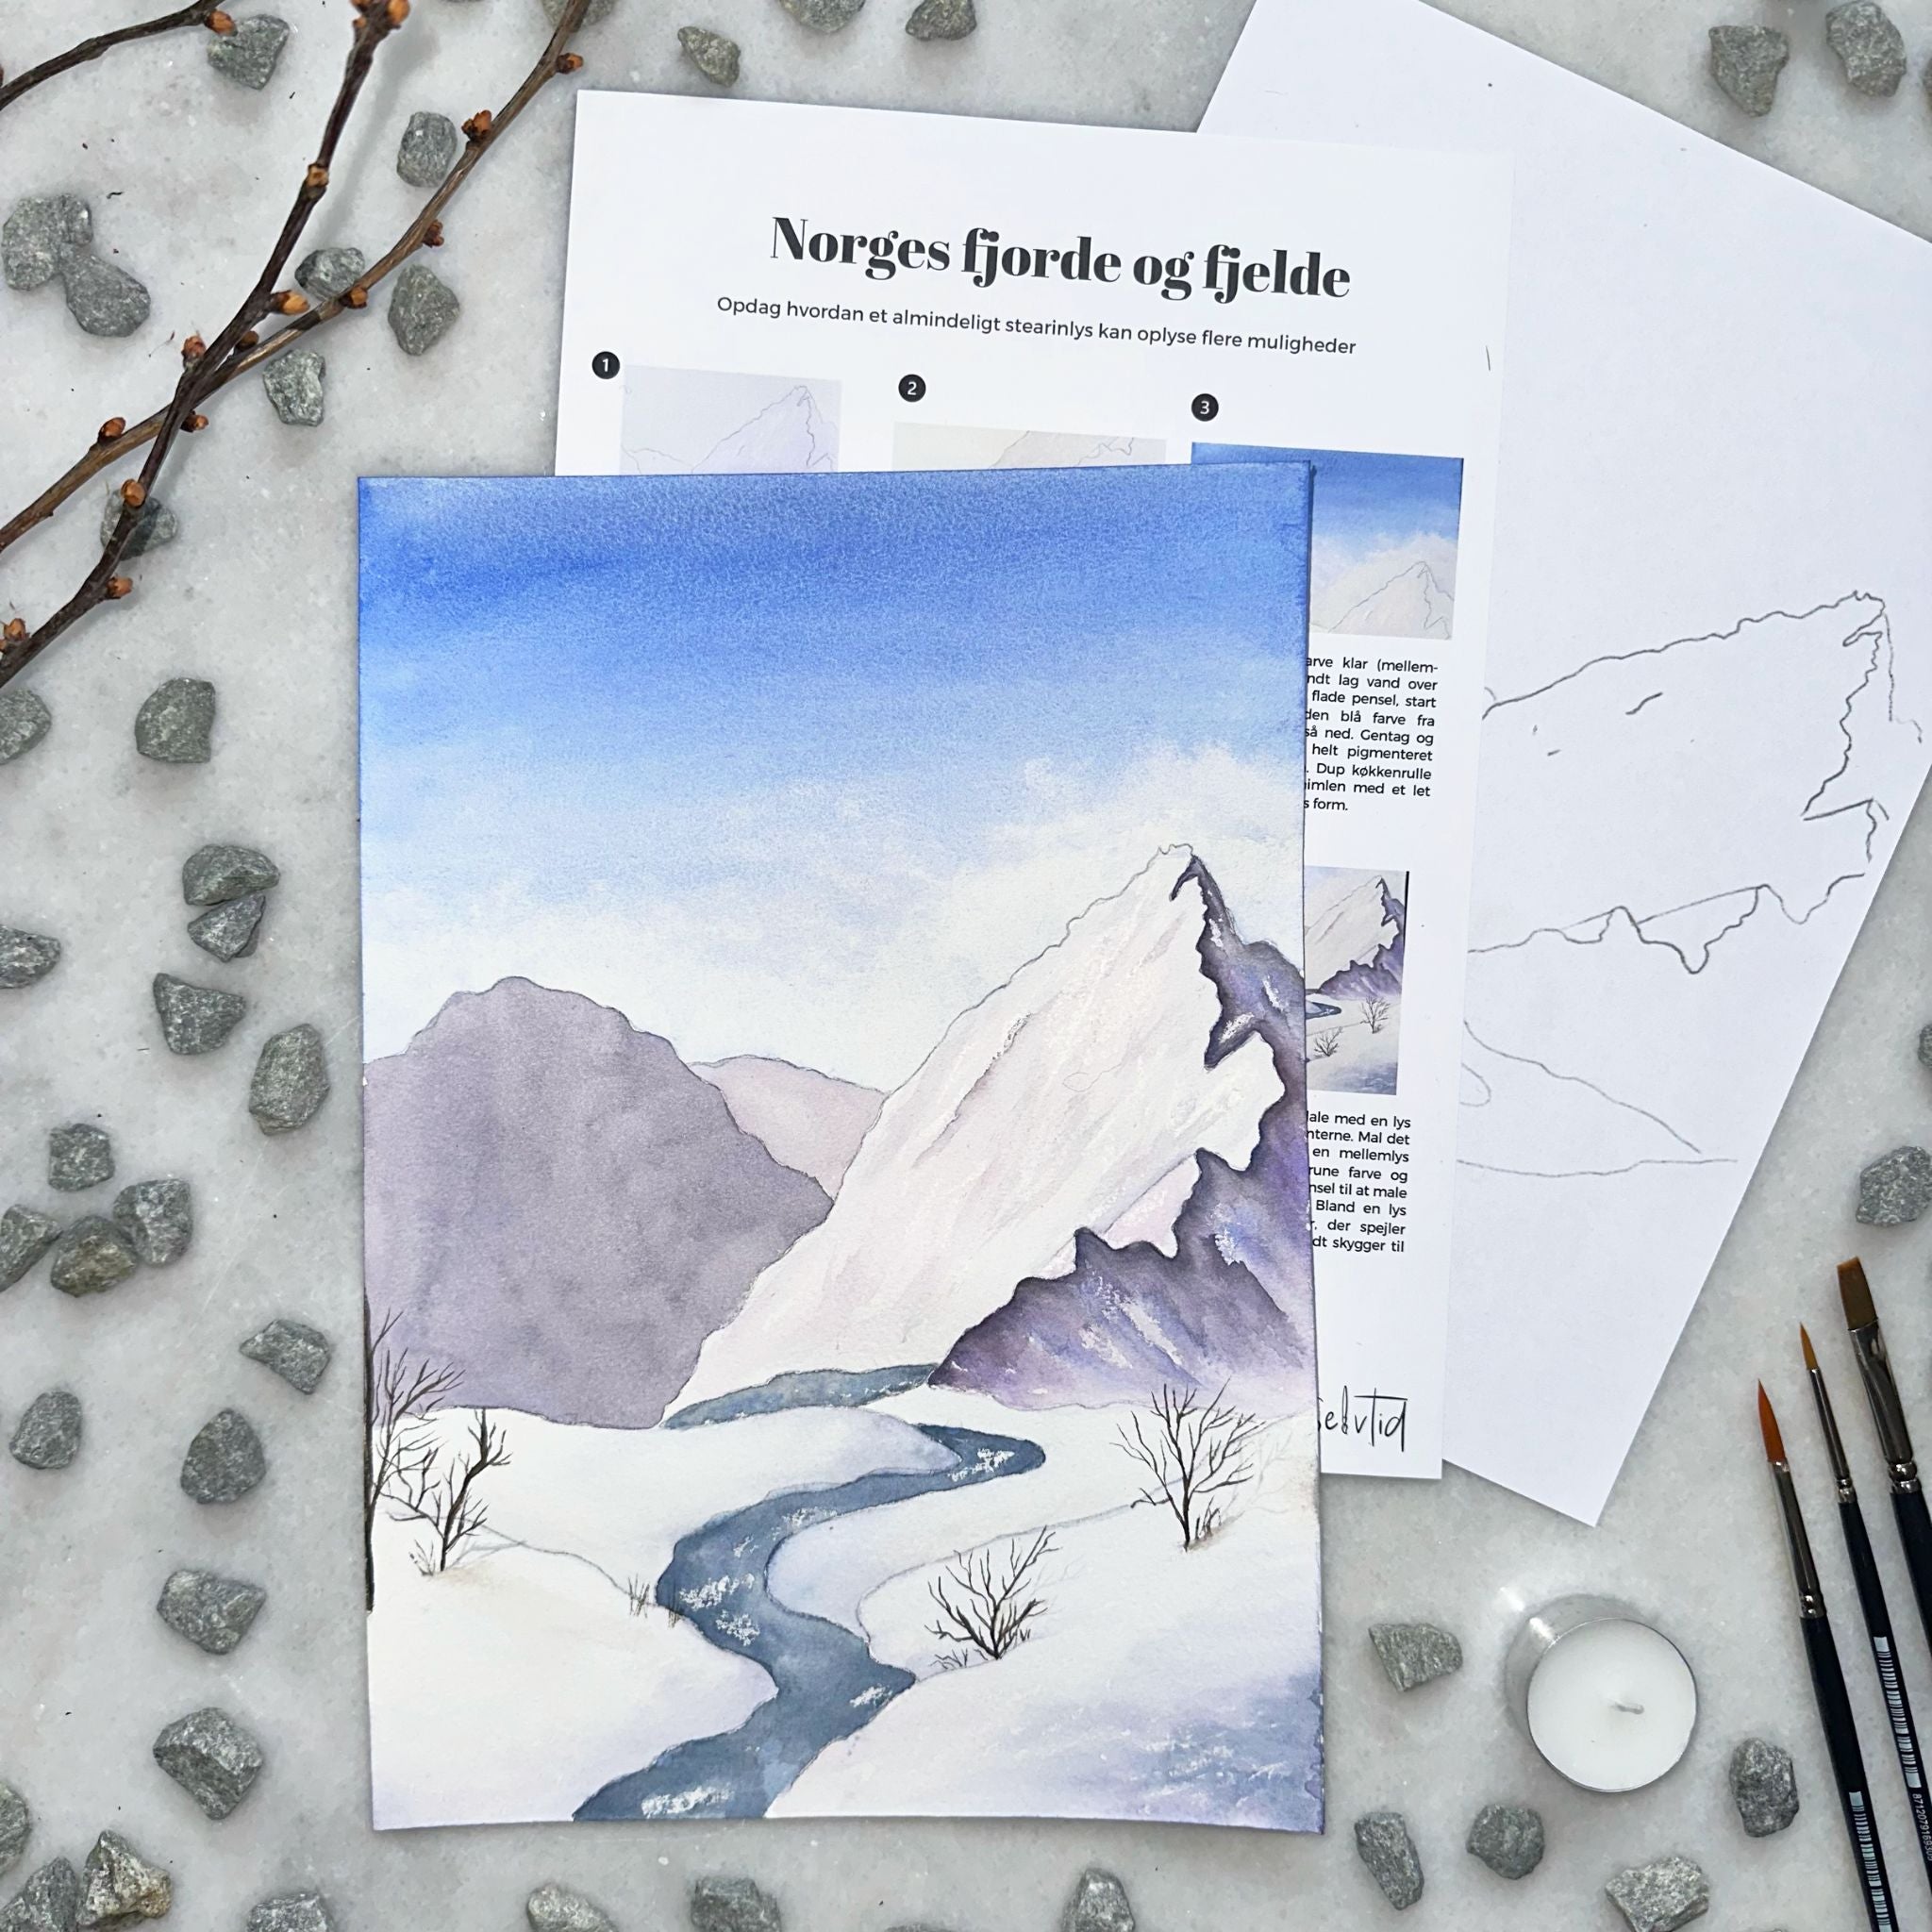 bjerge fjorde og fjelde selvtid januar lær at male bjerglandskab med akvarel